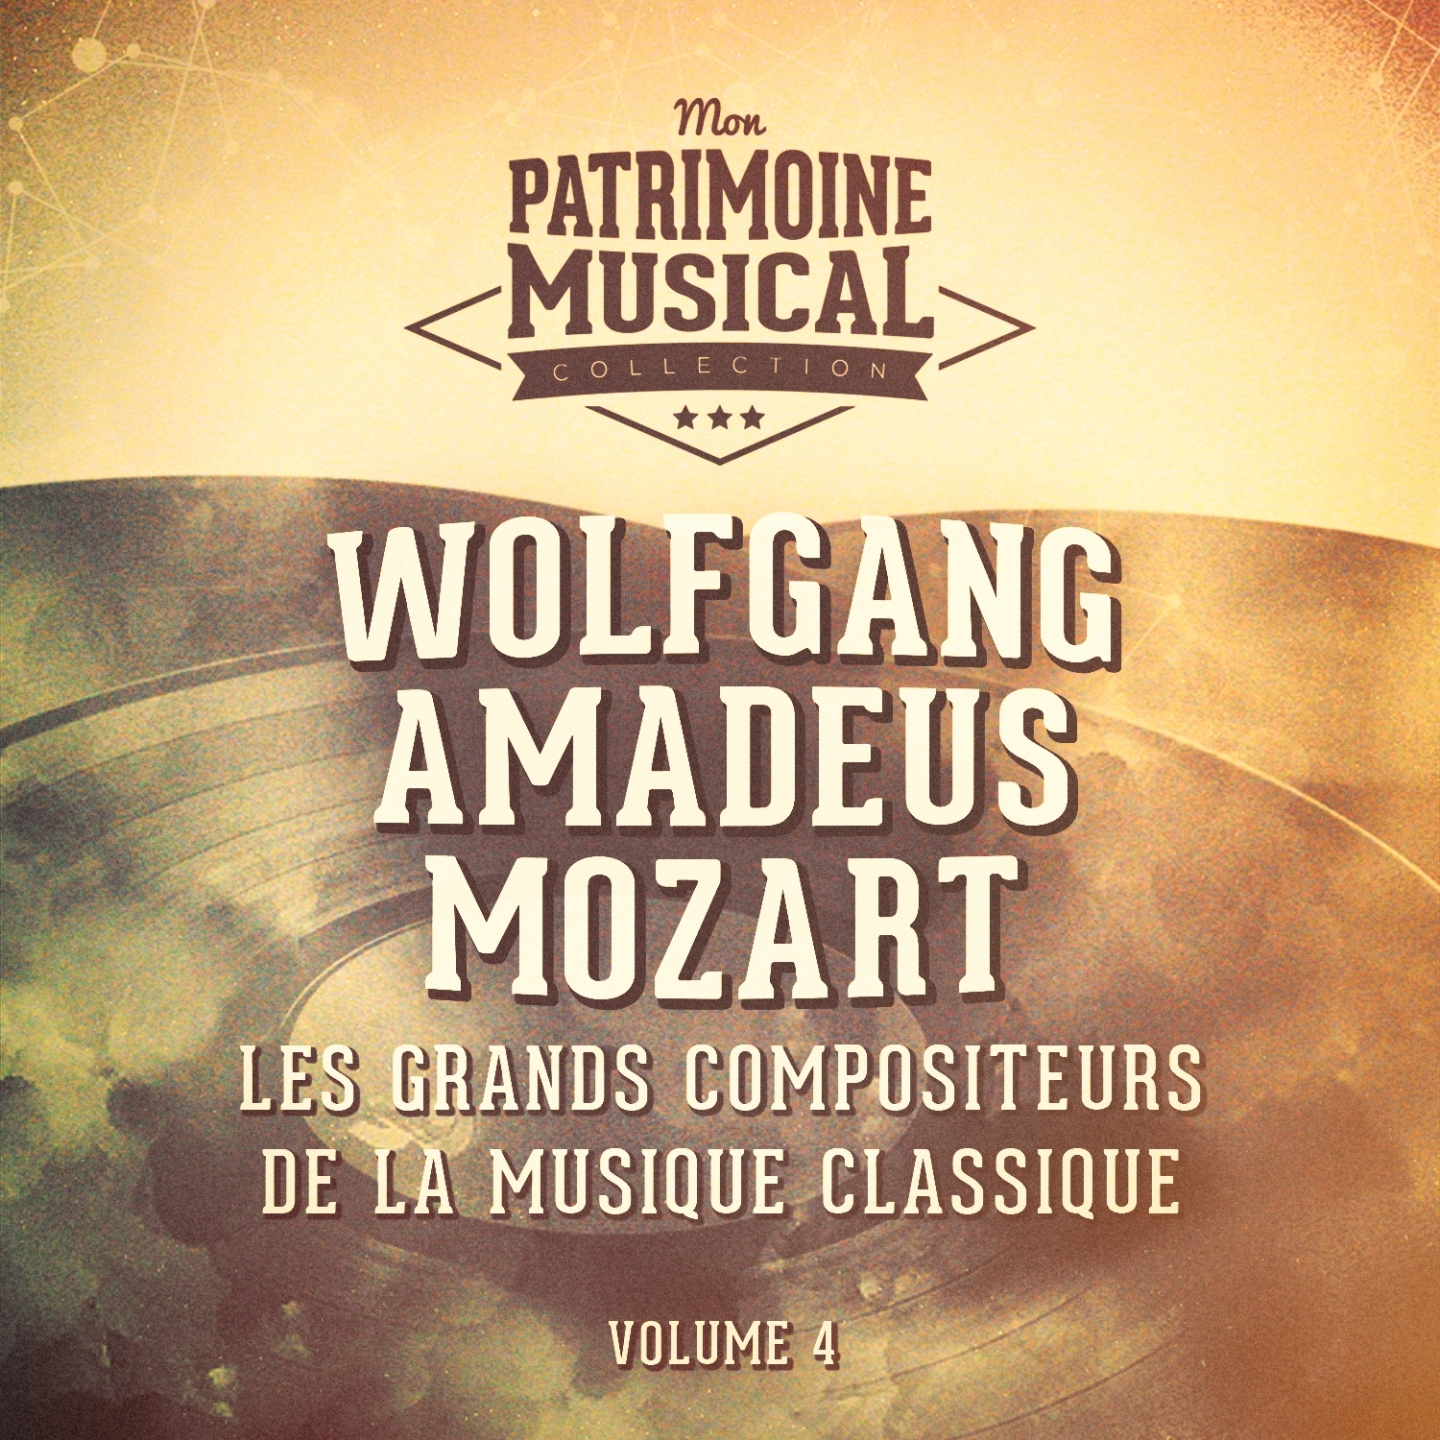 Les grands compositeurs de la musique classique : Wolfgang Amadeus Mozart, Vol. 4